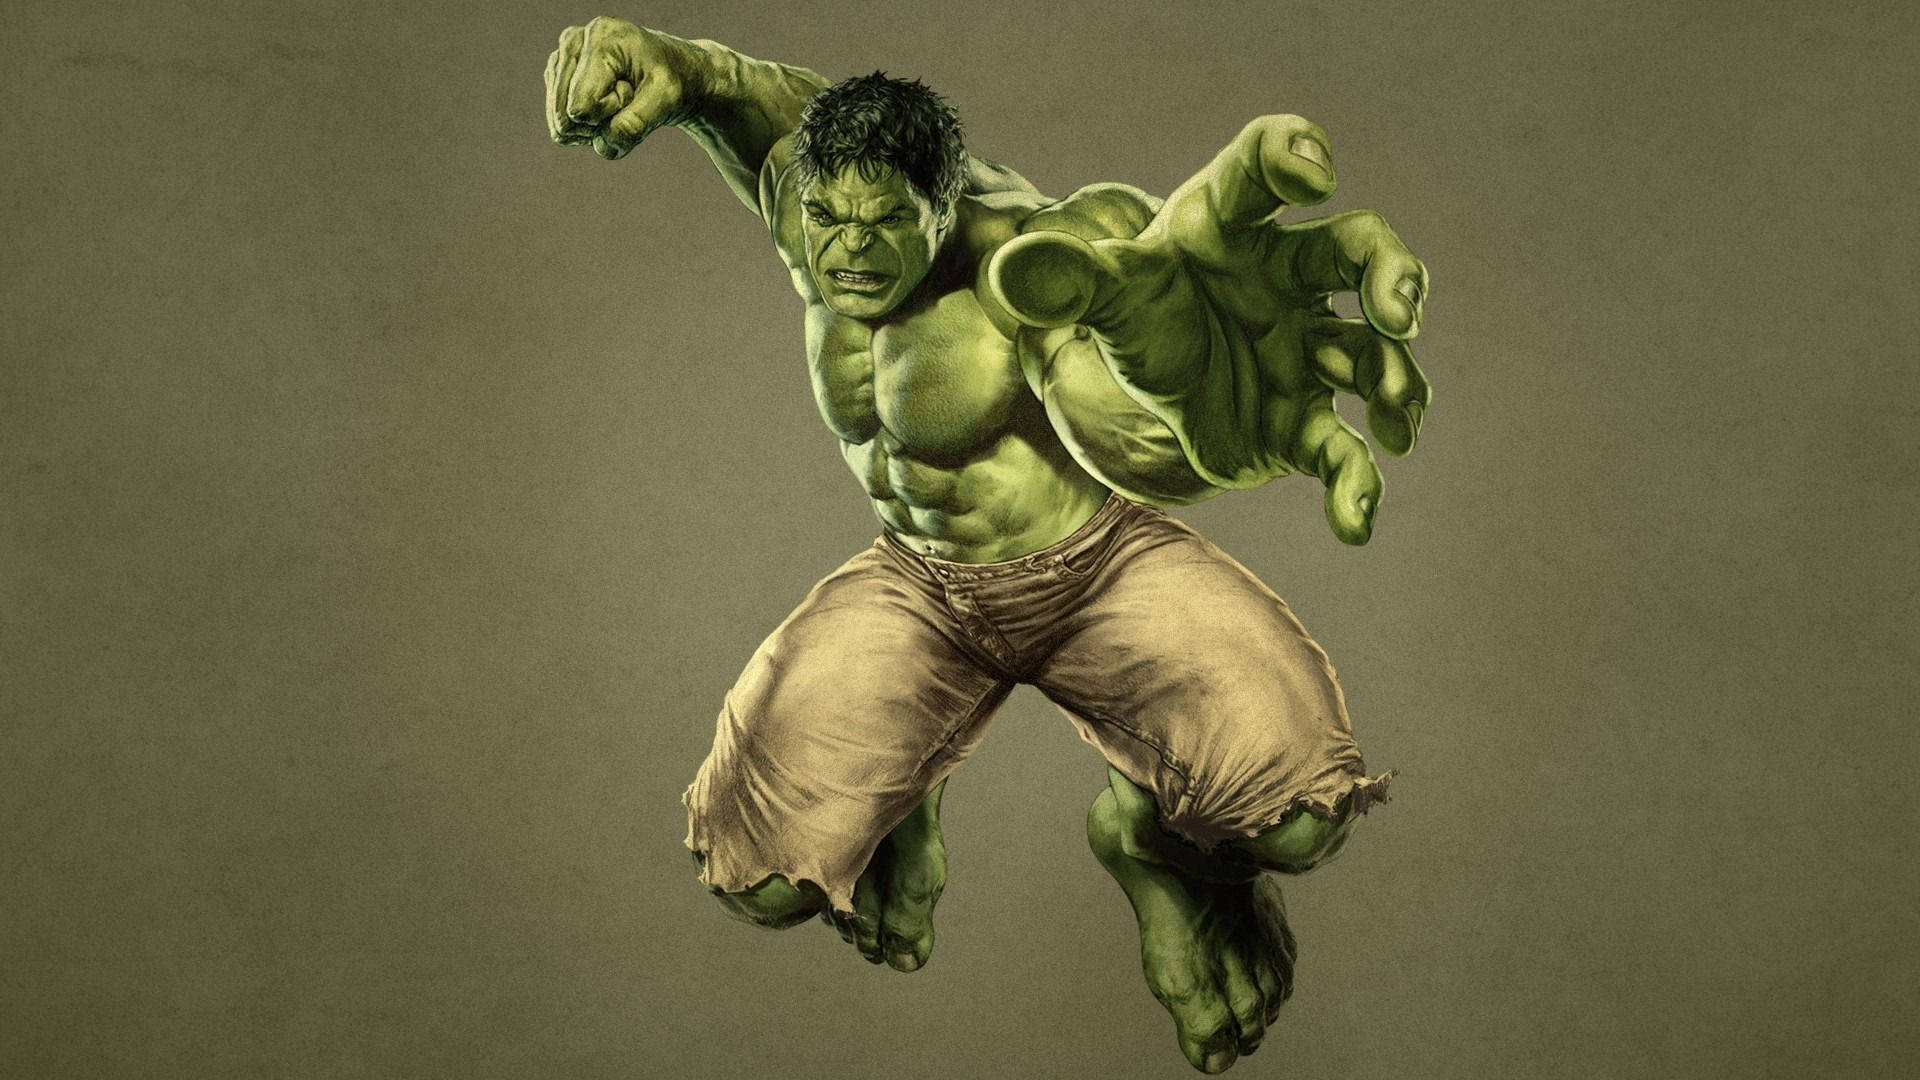 Hình nền  1366x768 px Avengers Age of Ultron Hulk 1366x768  wallpaperUp   1219327  Hình nền đẹp hd  WallHere